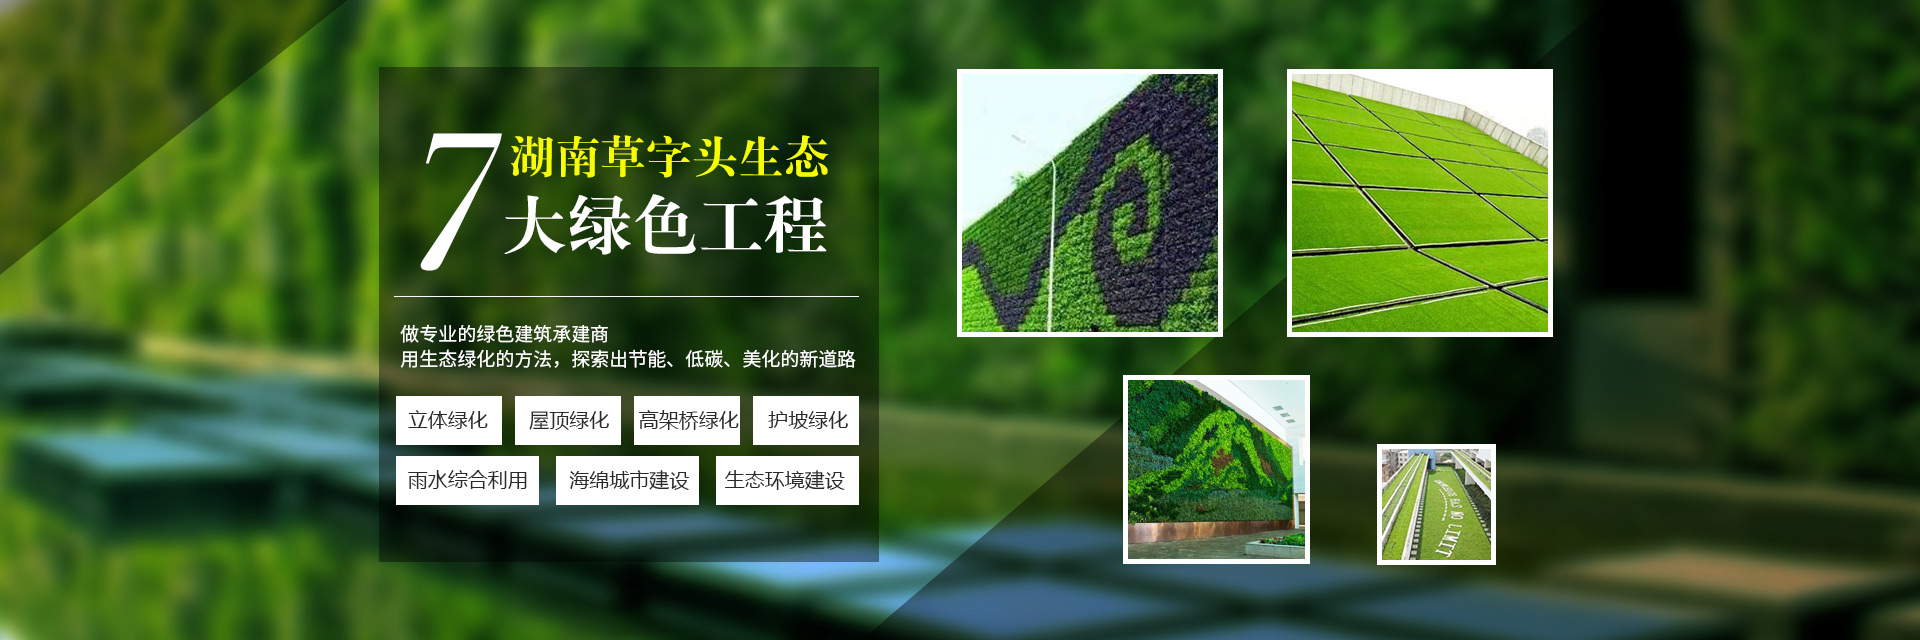 湖南草字頭生態環境建設有限公司|專注于生態修復和綠化環保事業